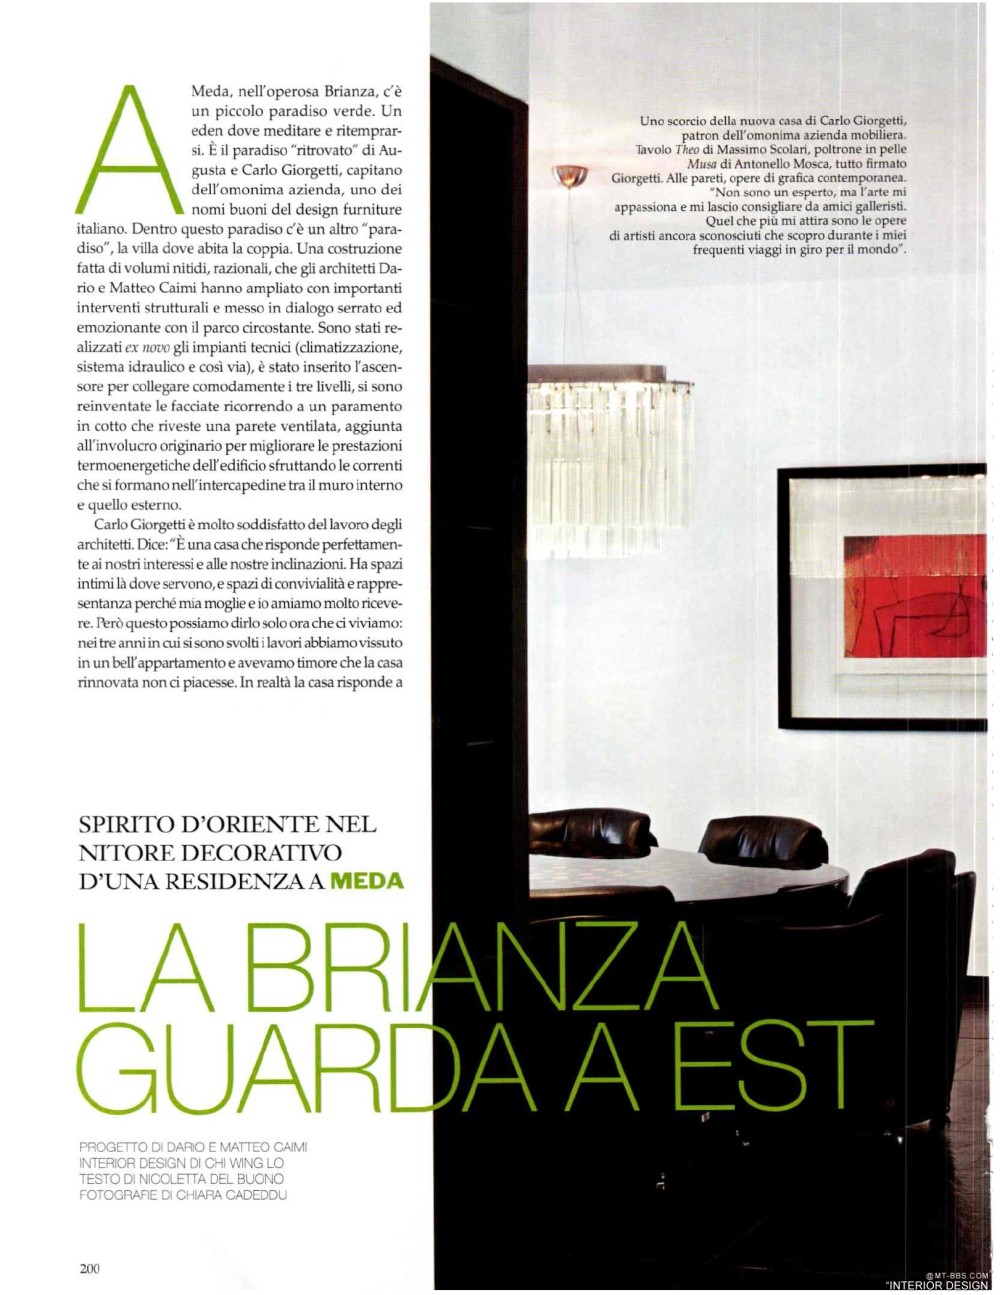 意大利AD 杂志 2012年全年JPG高清版本 全免（上传完毕）_0202.jpg